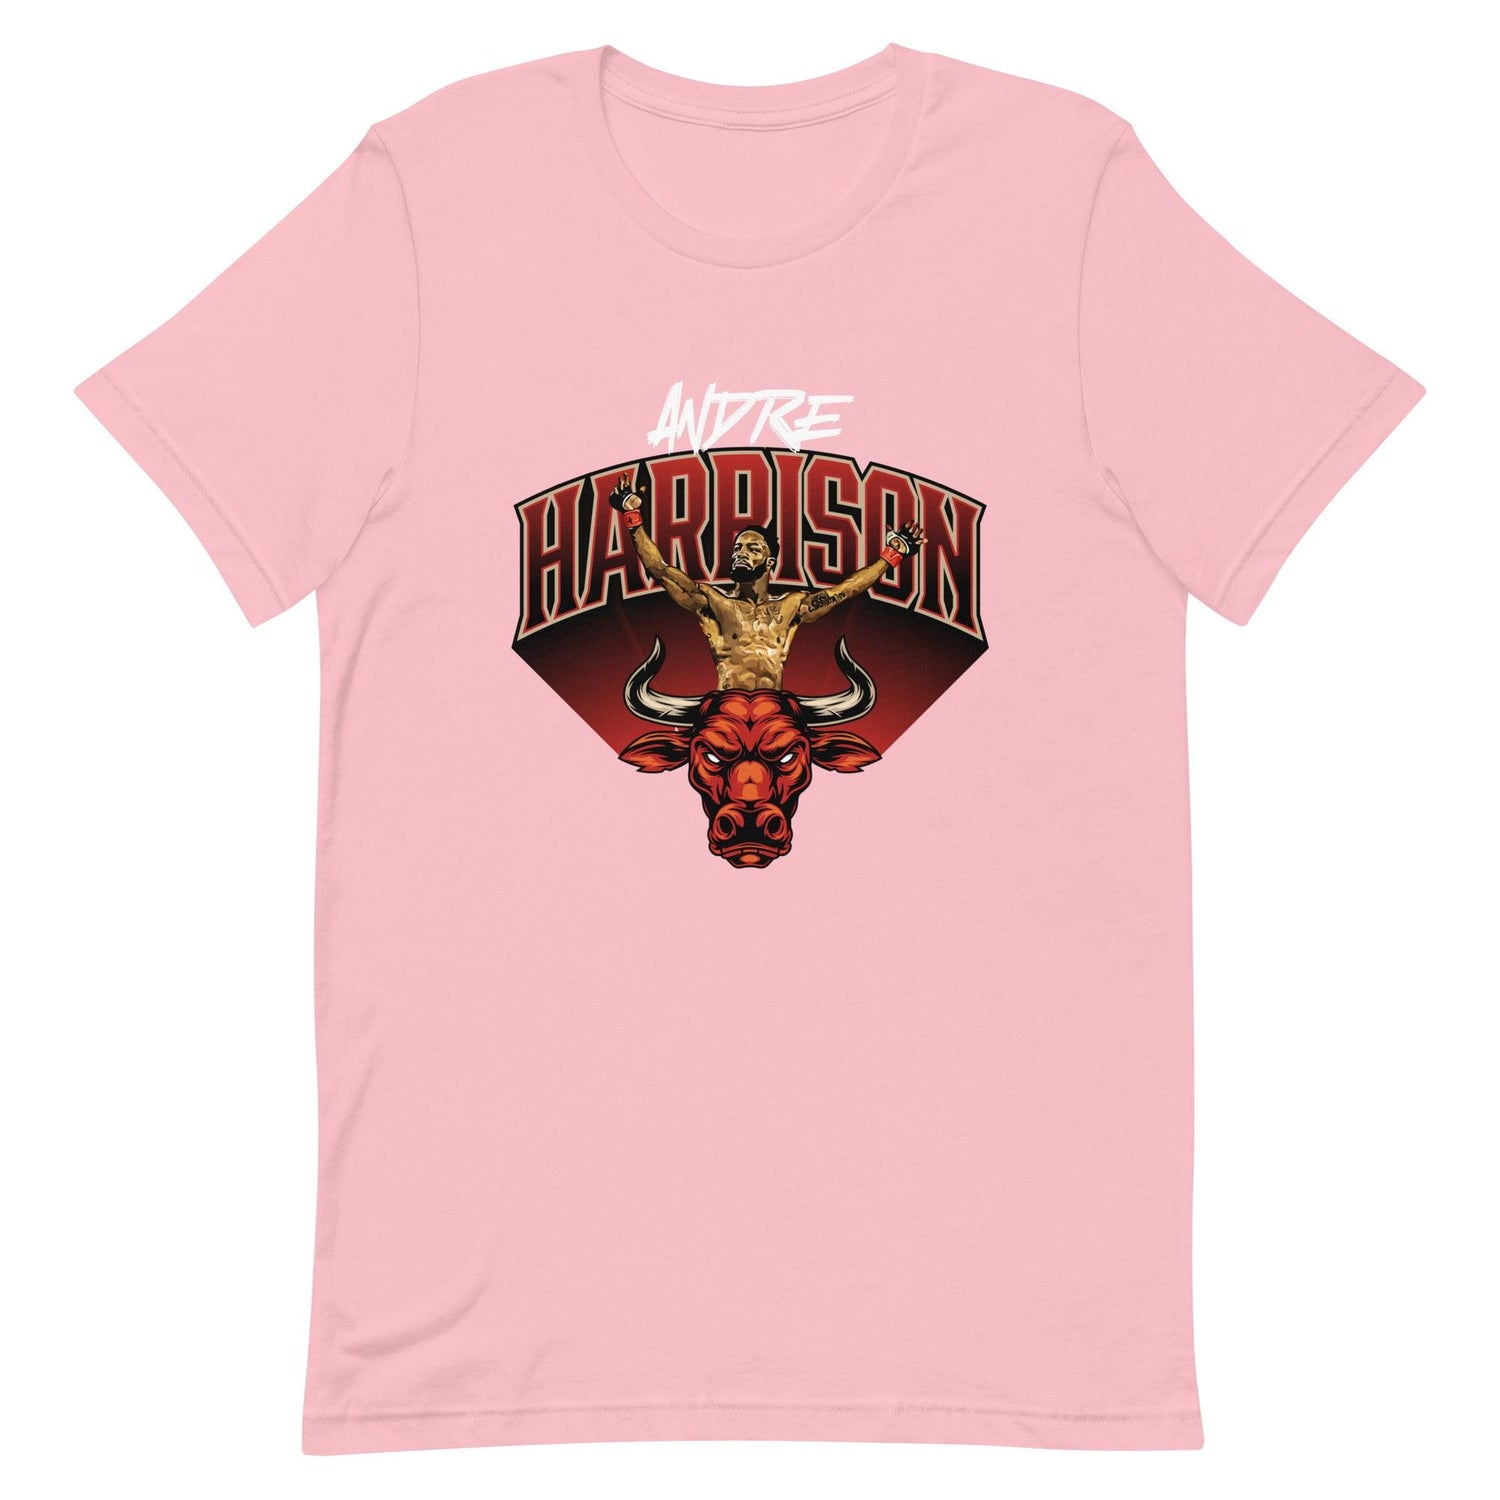 Andre Harrison t-shirt - Fan Arch